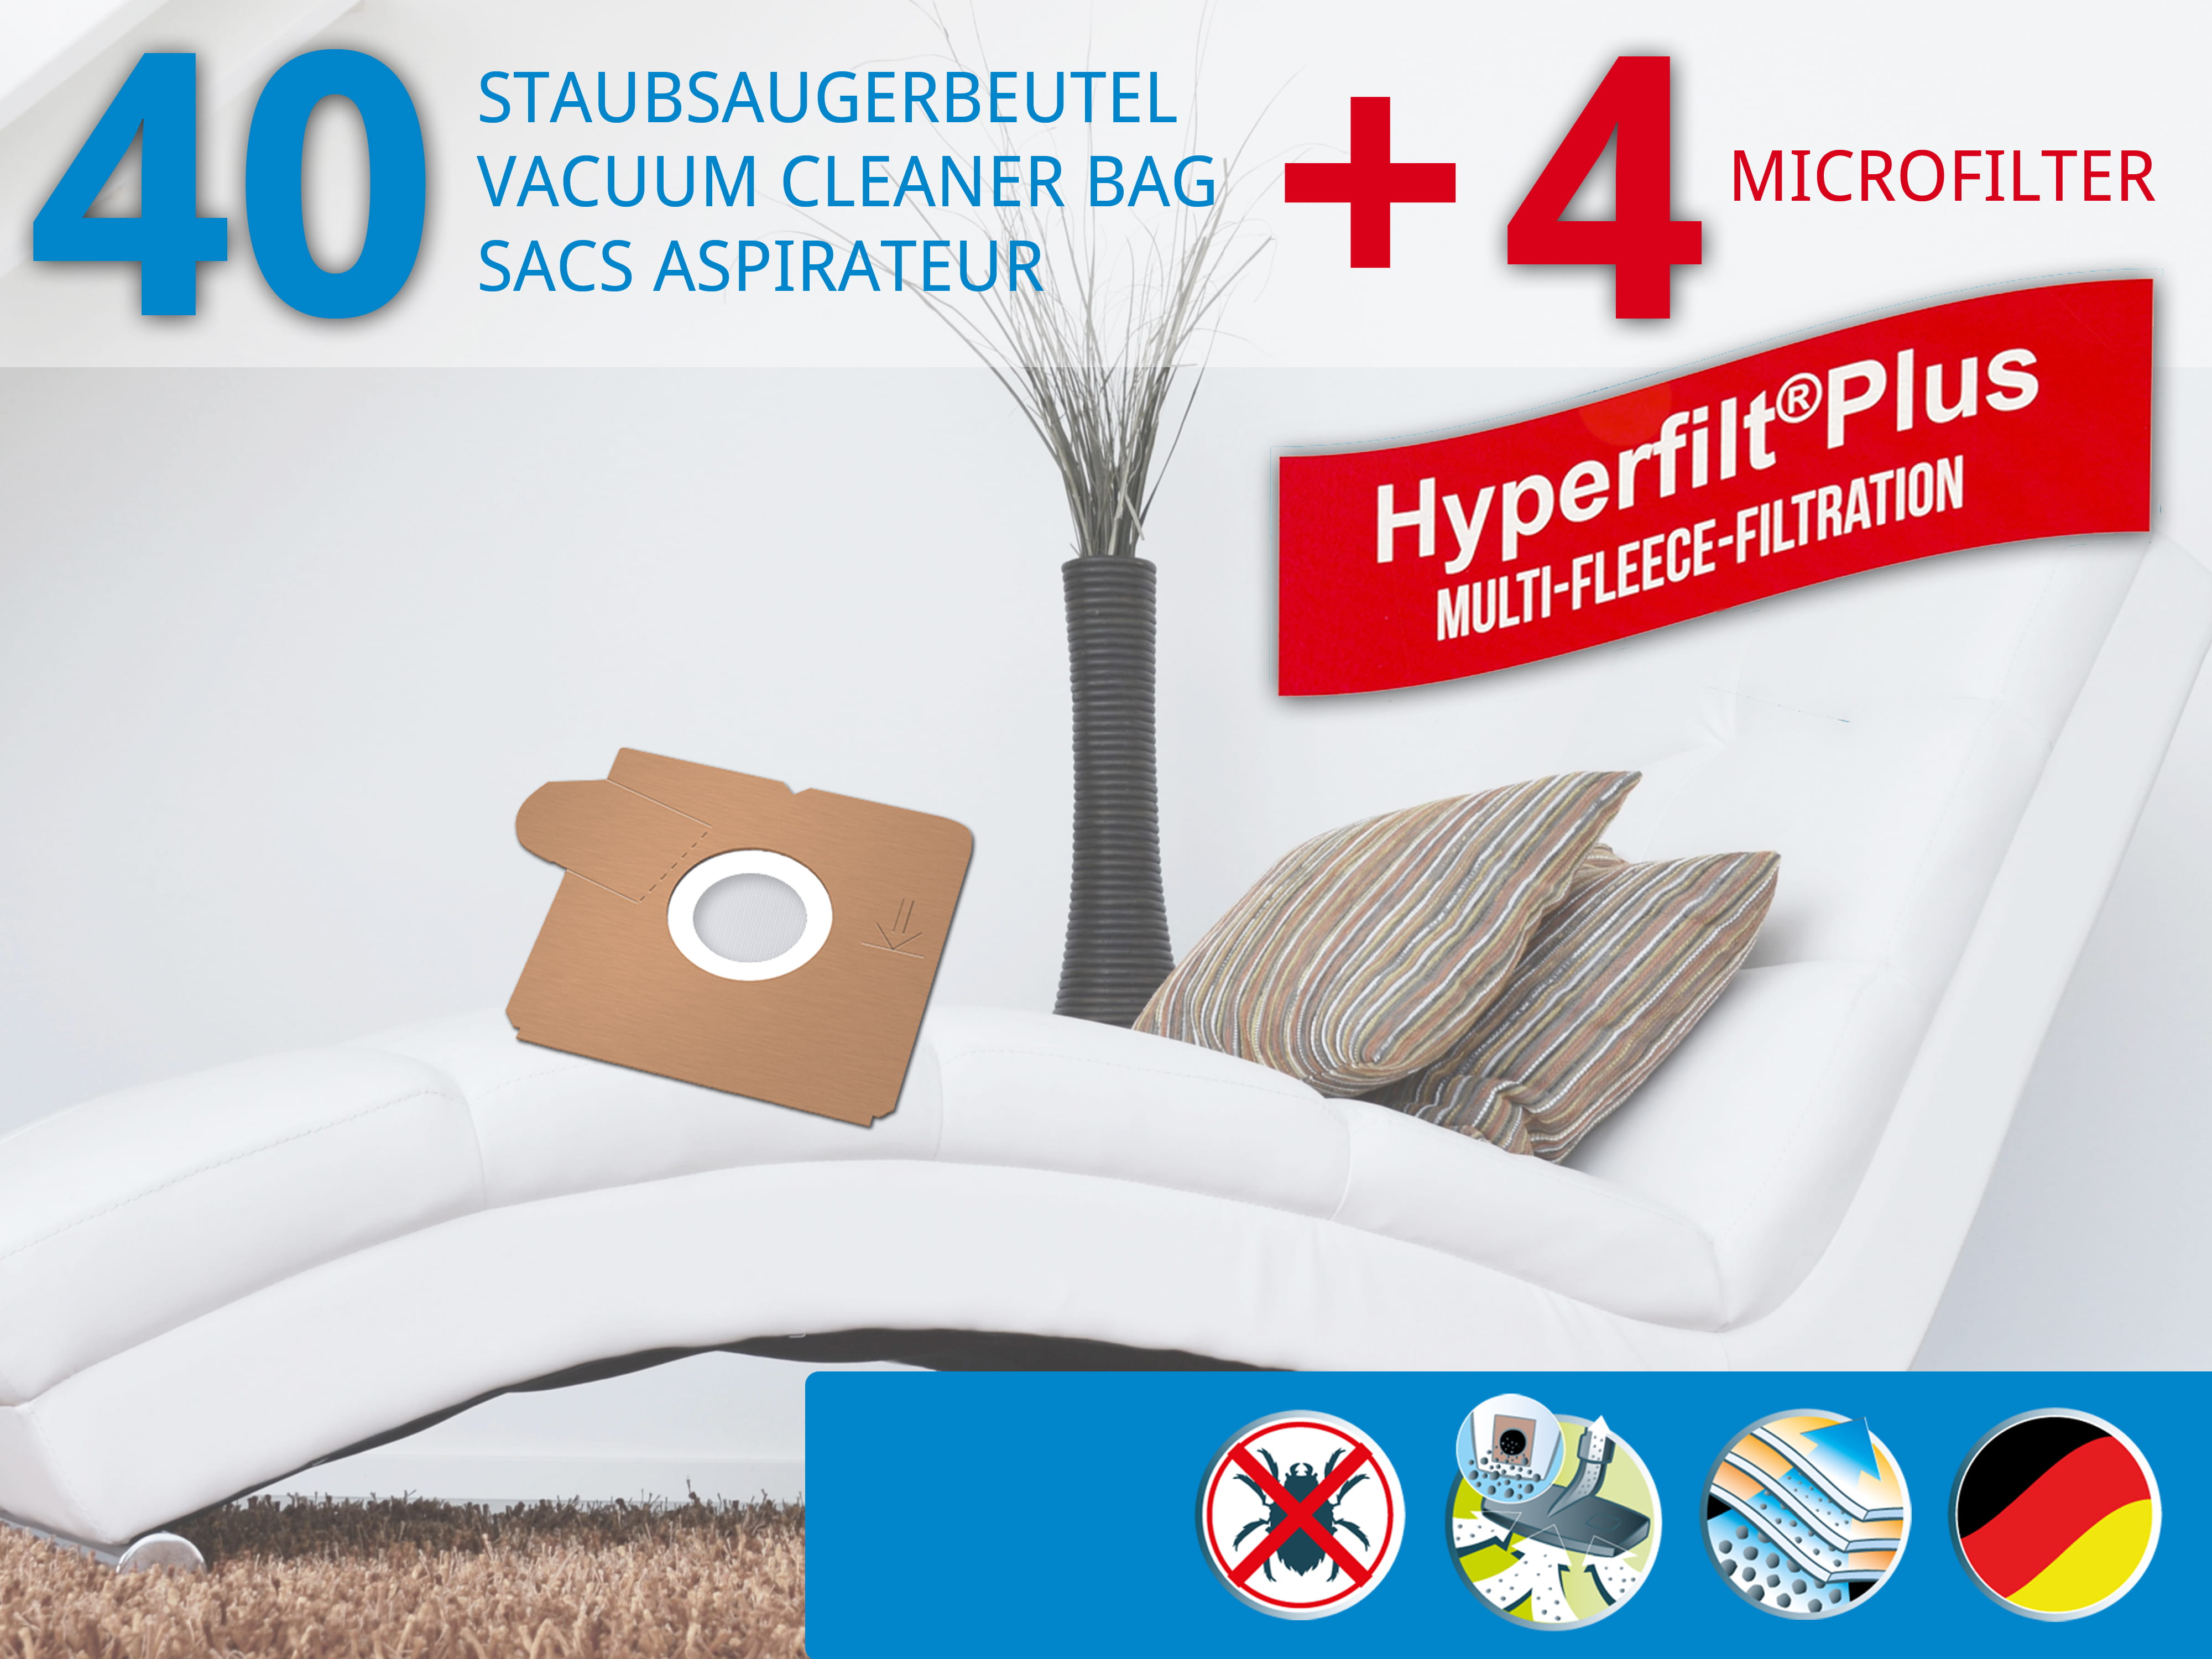 Dustwave® 40 Staubsaugerbeutel für AEG GR5 / Größe 5 - hocheffizient, mehrlagiges Mikrovlies mit Hygieneverschluss - Made in Germany